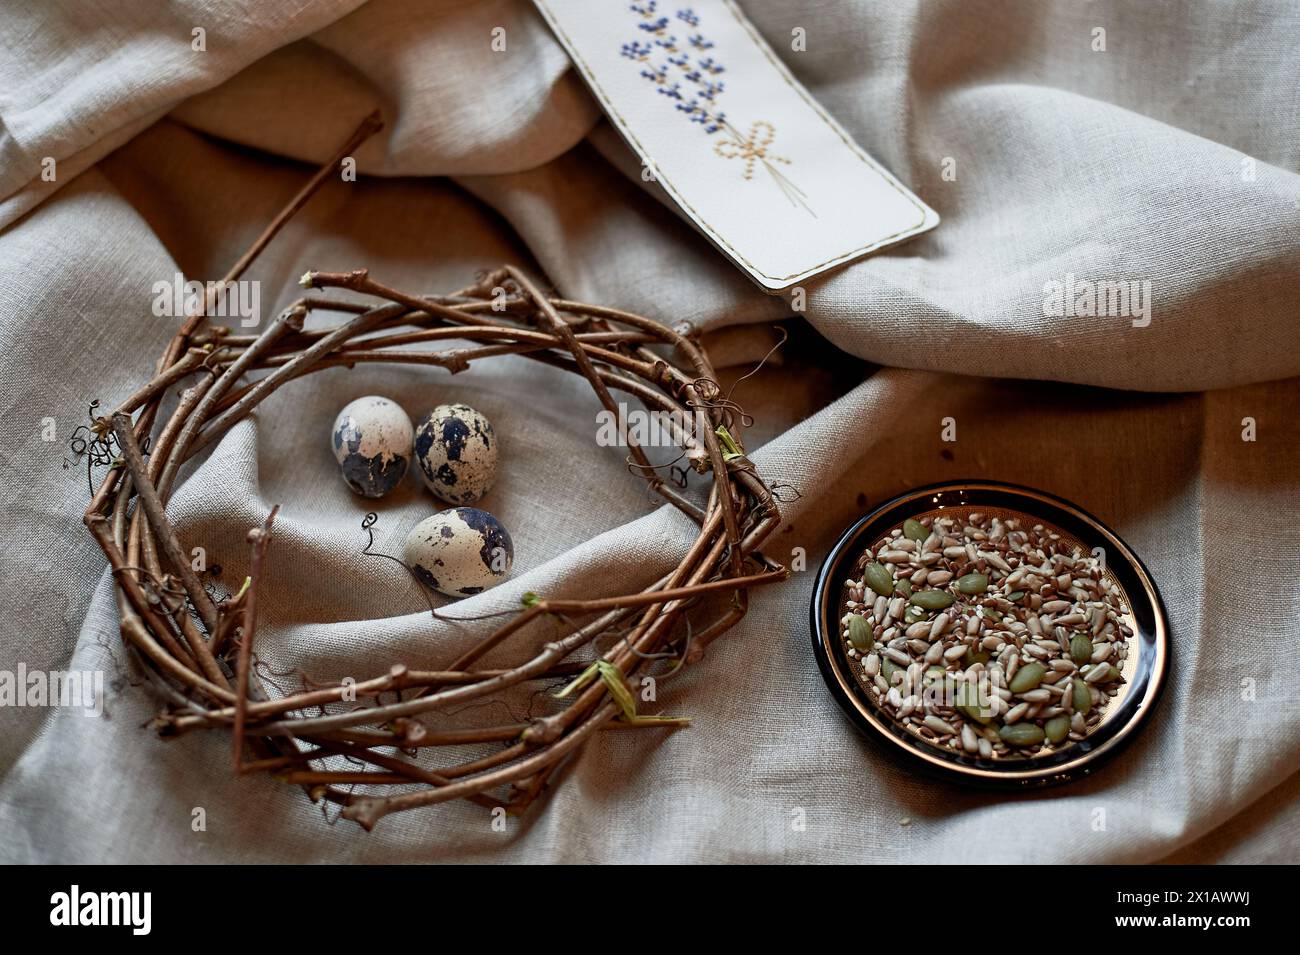 Ein Kranz aus Wachteleiern, wunderschön auf einem hölzernen Serviergeschirr ausgestellt, begleitet von einem Teller mit verschiedenen Samen. Das Arrangement ist mit twi verziert Stockfoto